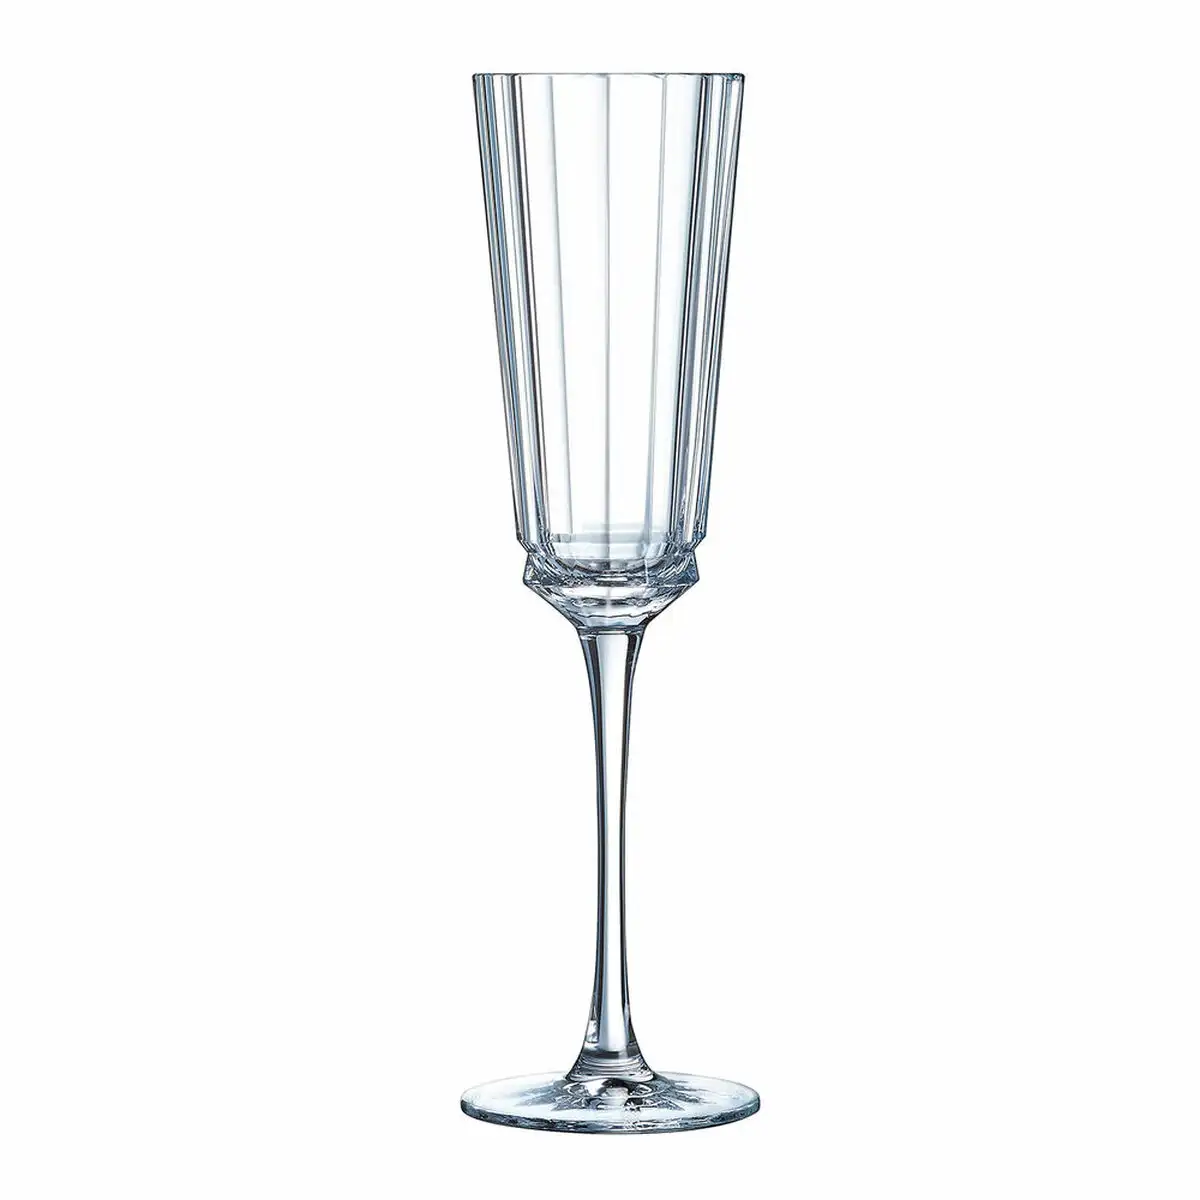 Coupe de champagne cristal d arques paris 7501613 transparent reconditionne d _3304. DIAYTAR SENEGAL - Votre Portail Vers l'Exclusivité. Explorez notre boutique en ligne pour découvrir des produits uniques et raffinés, conçus pour ceux qui recherchent l'excellence.